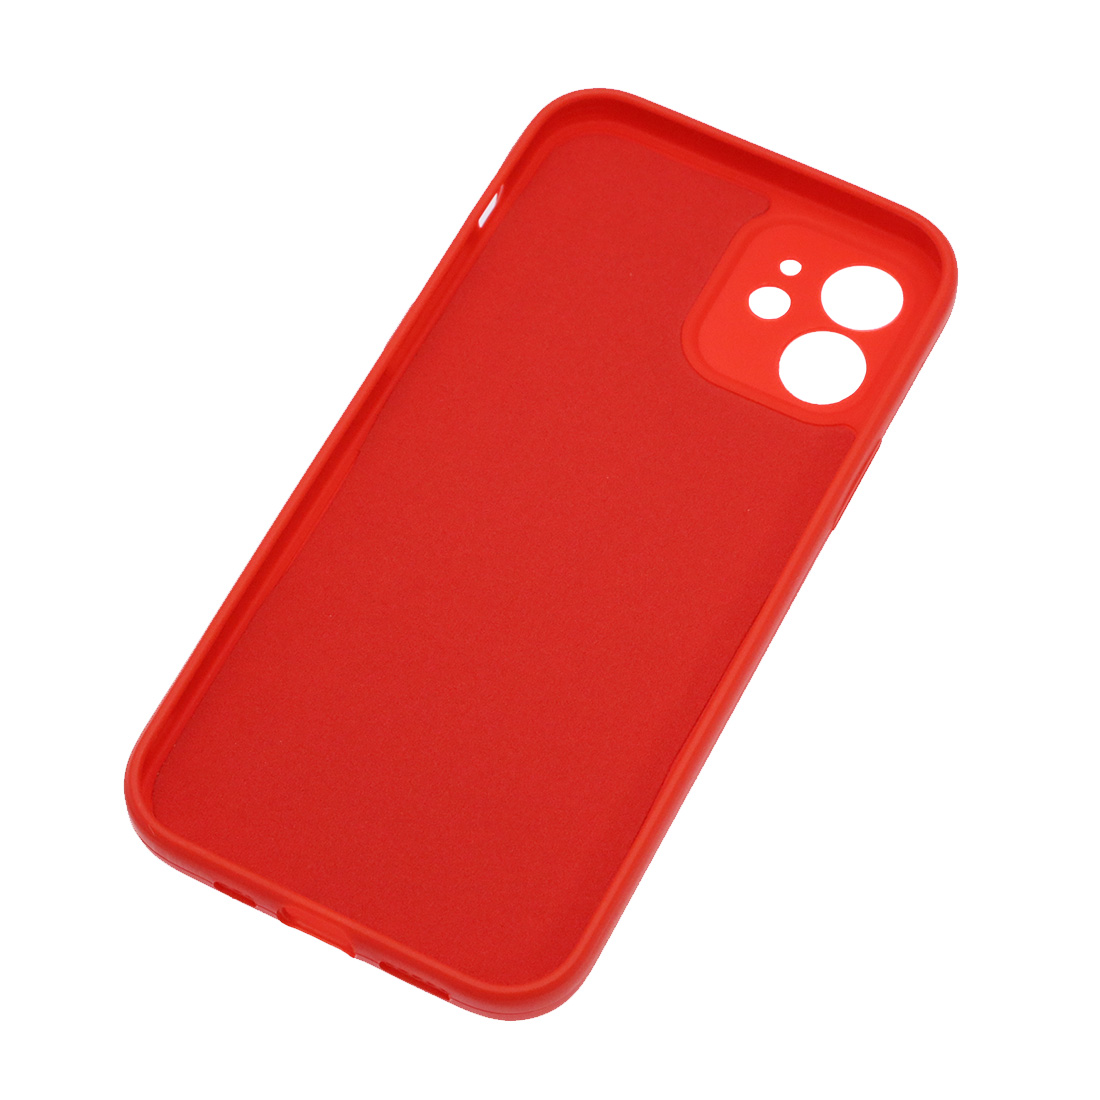 Чехол накладка для APPLE iPhone 12, силикон, бархат, цвет красный